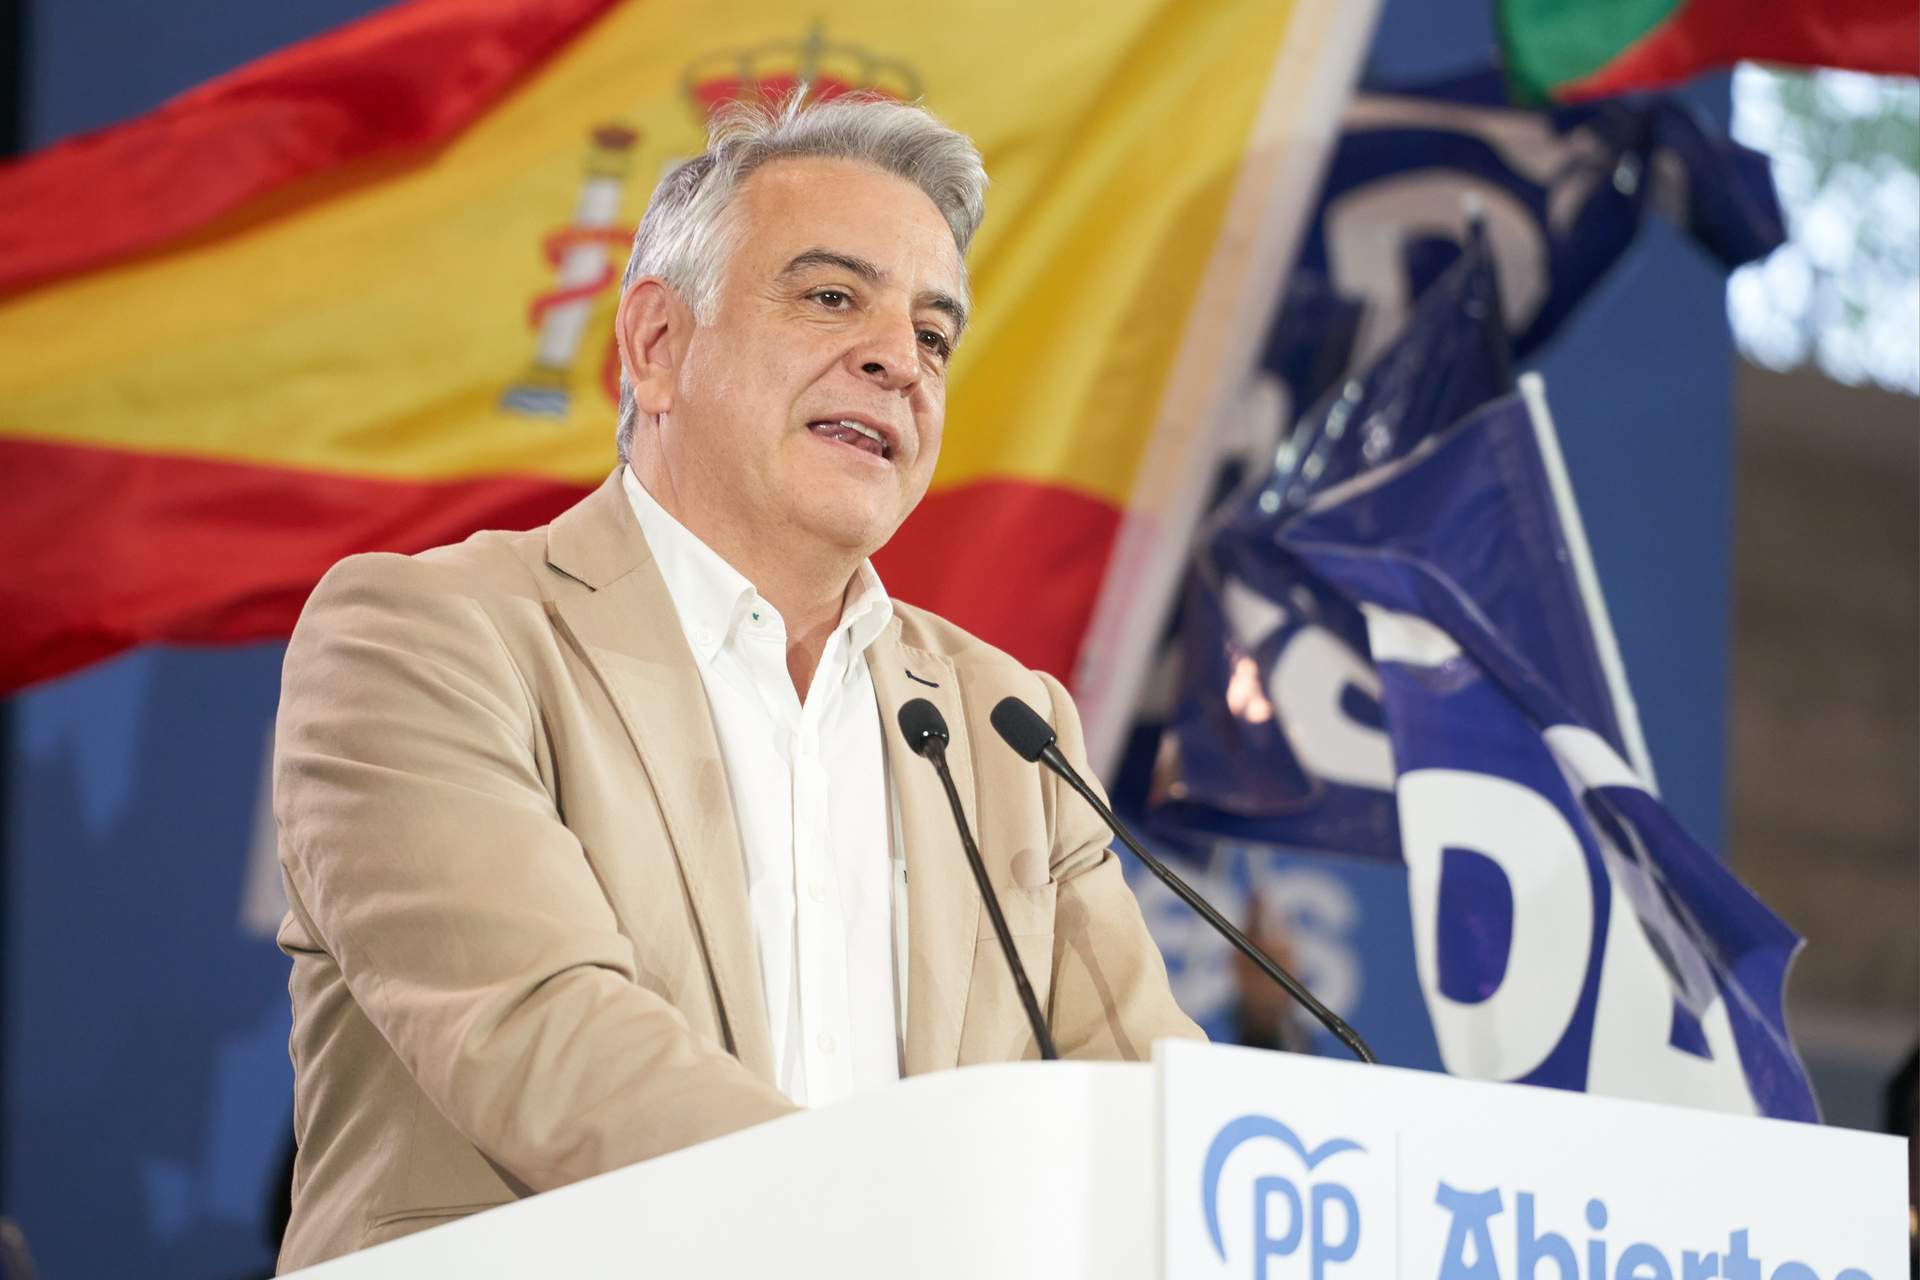 El candidato a lehendakari por el PP, Javier de Andrés, durante el acto de cierre de campaña de su partido.